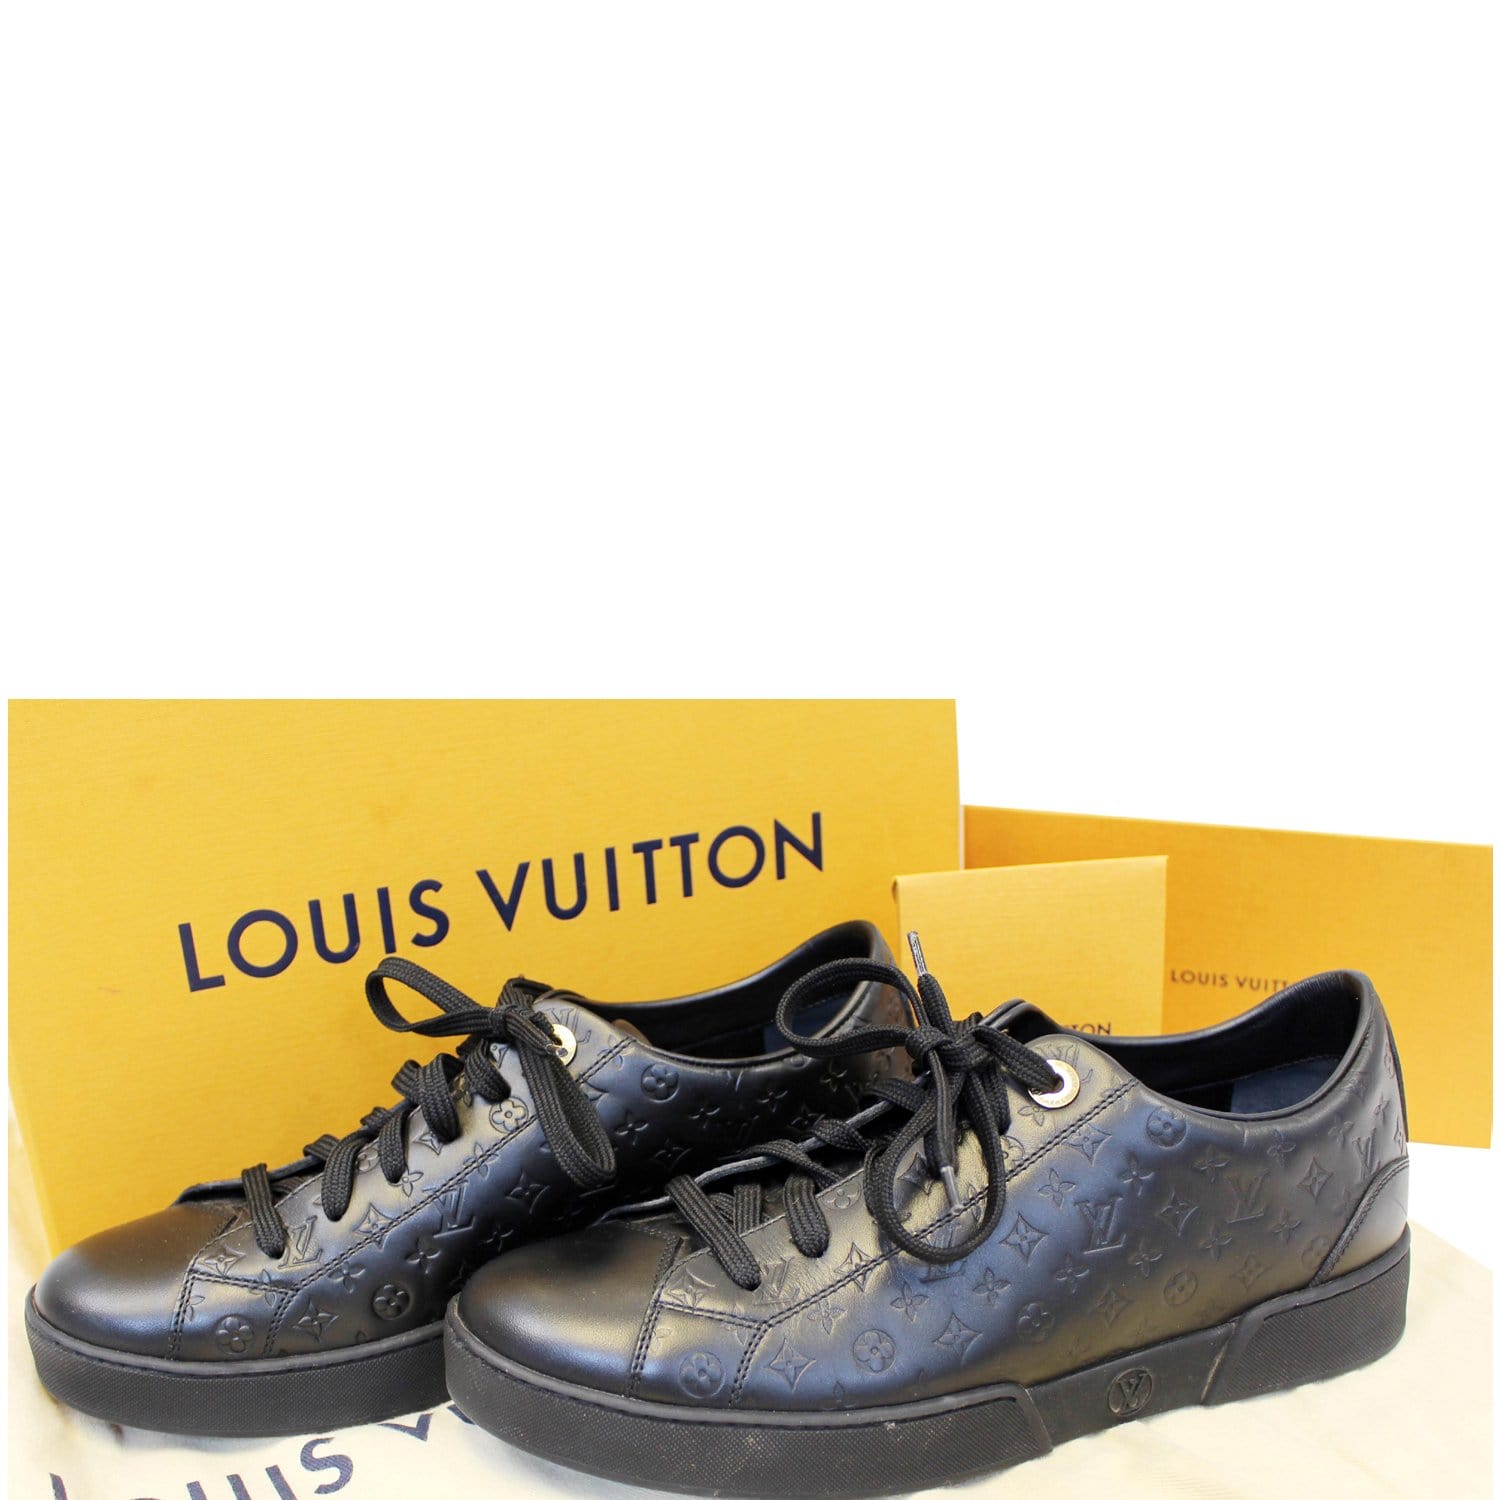 Bảng giá túi Louis Vuitton từ tầm trung đến cao cấp